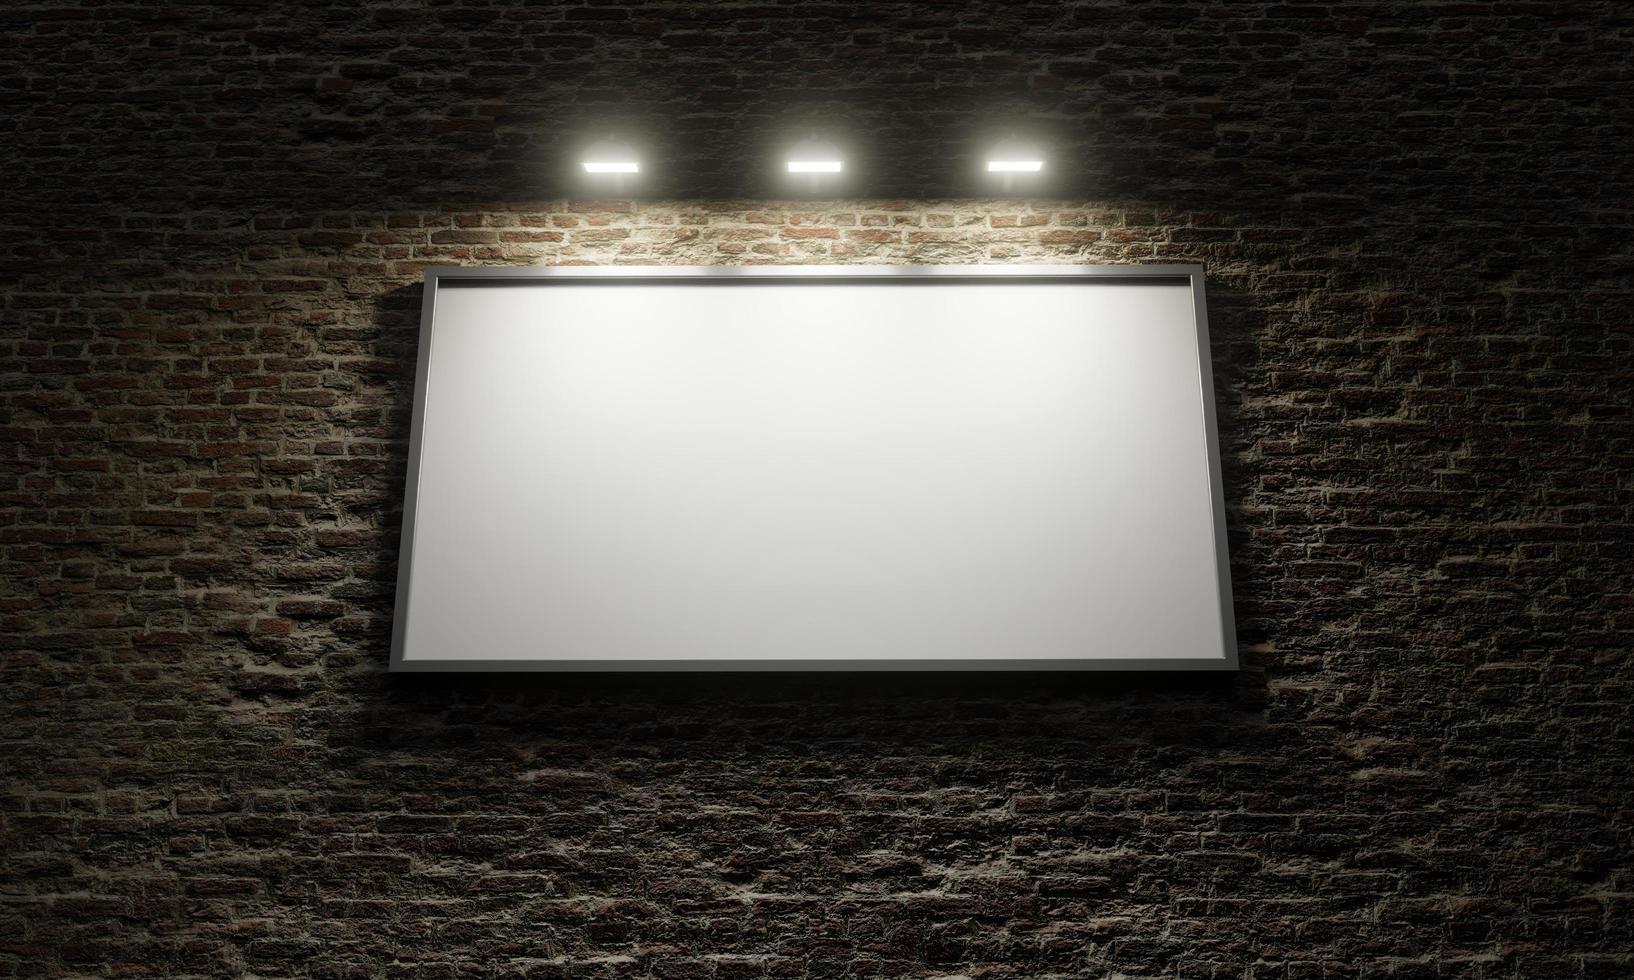 Affiche publicitaire sur un mur de briques avec des projecteurs, rendu 3d photo